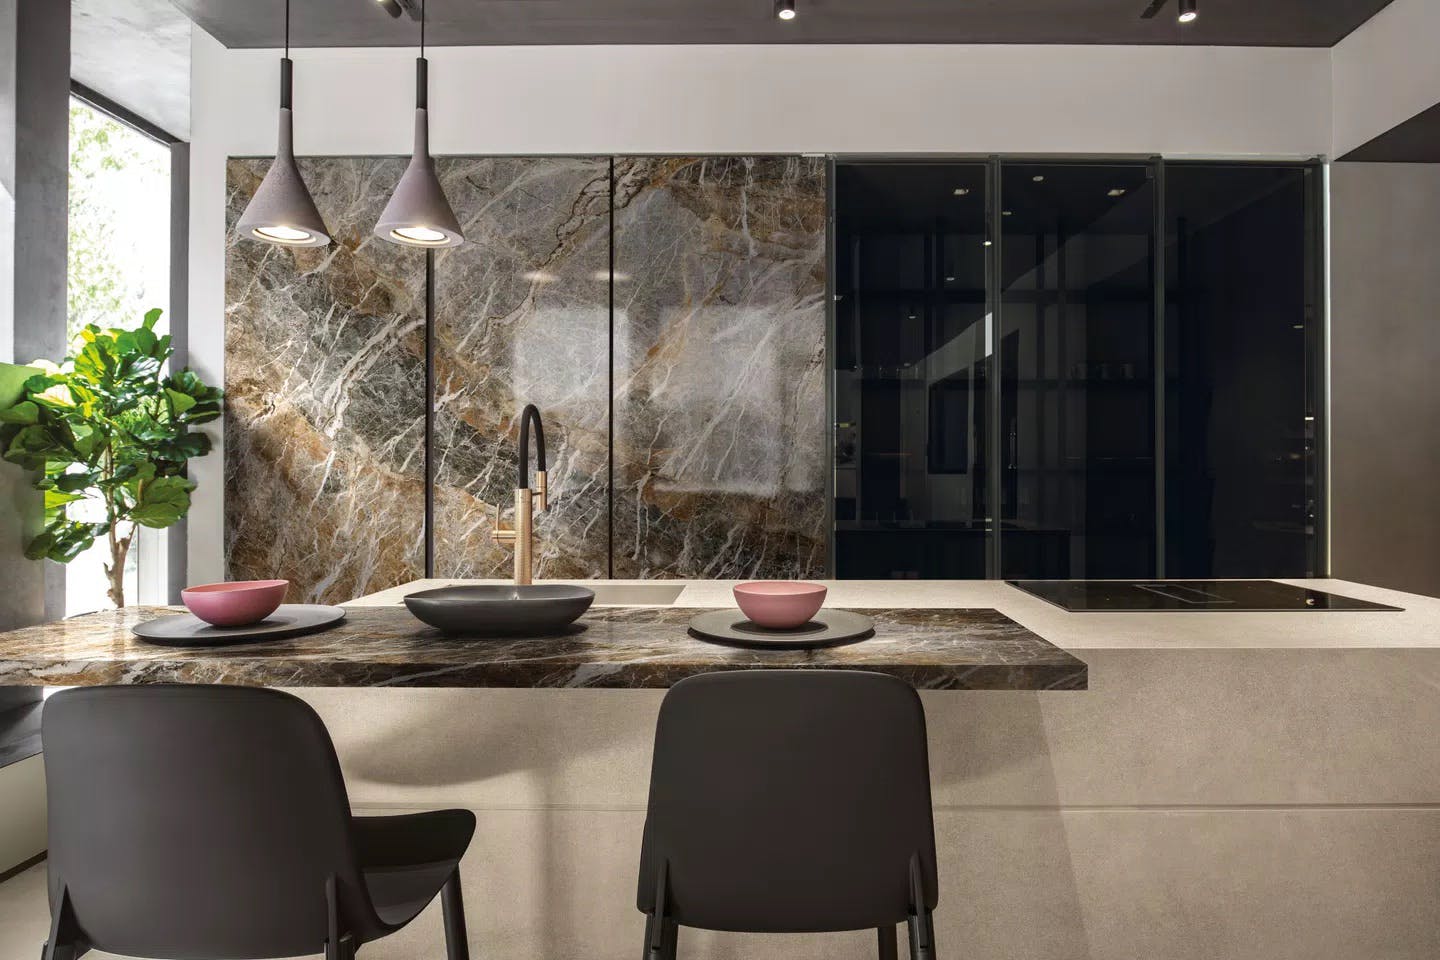 Cozinha com ilha em pedra mármore da marca Florim, coleção Marble, na cor Mountain peak